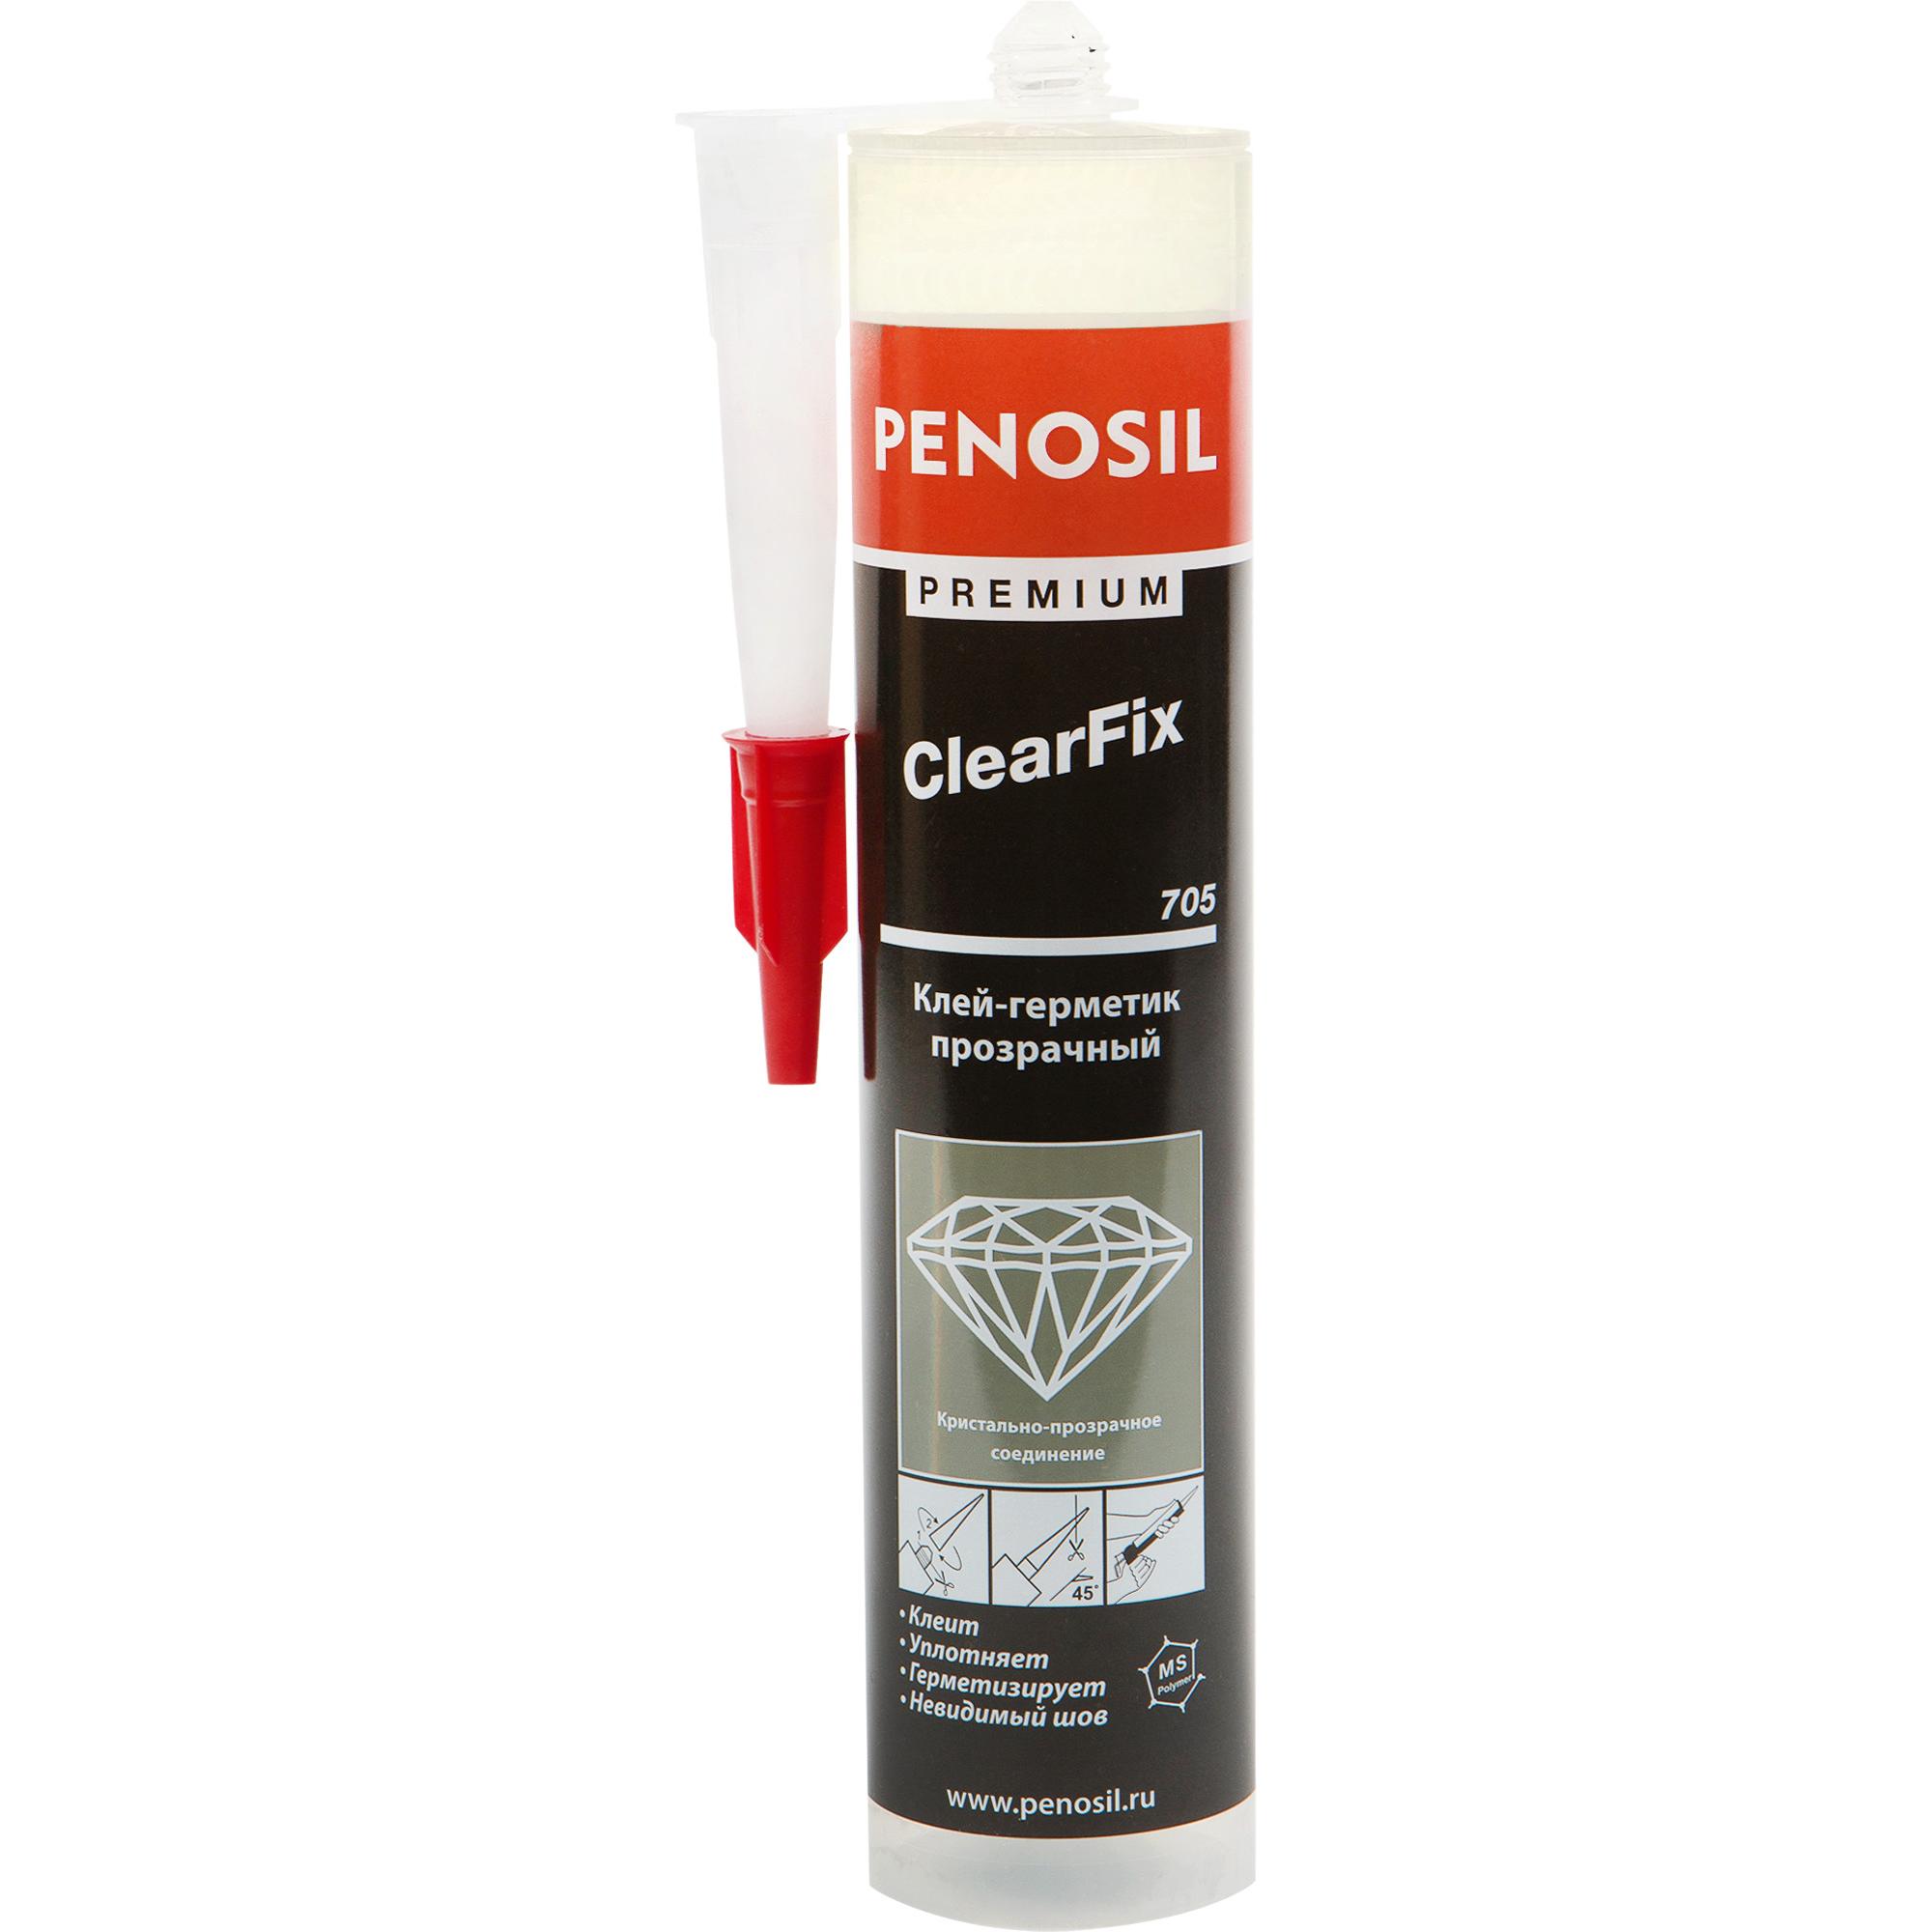 Clearfix. Penosil all weather h1242 прозрачный (280 мл). Универсальный клей-герметик Penosil Premium Seal&Fix. Пеносил 709 клей. 10. Клей-герметик, прозрачный Penosil Premium clearfix 705.